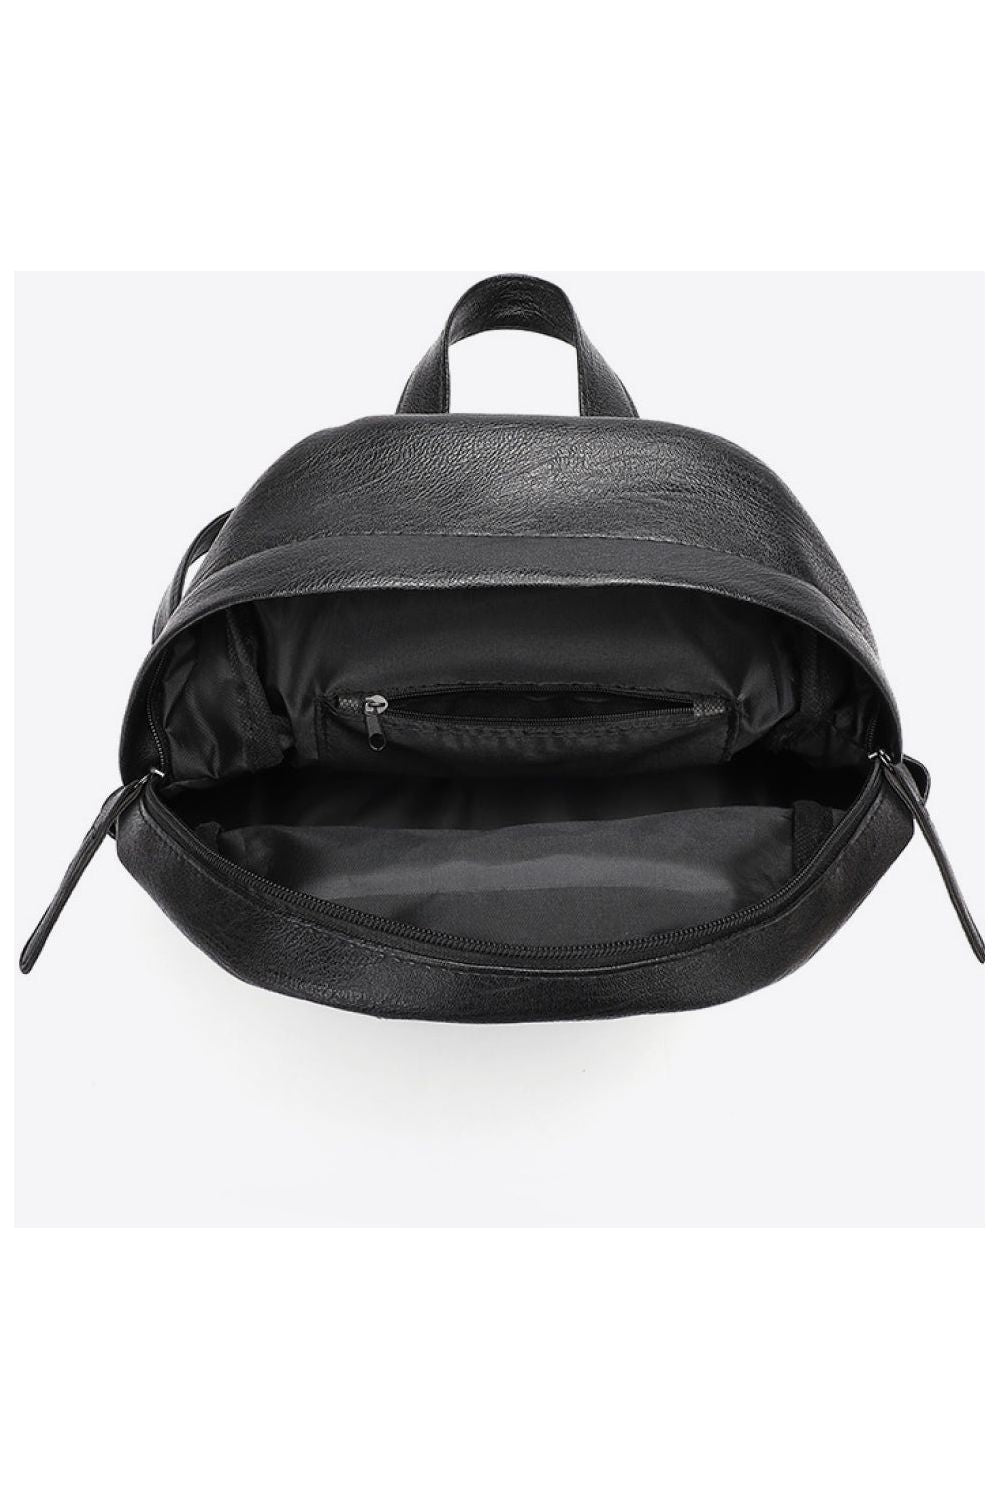 Baeful PU Leather Backpack - By Baano